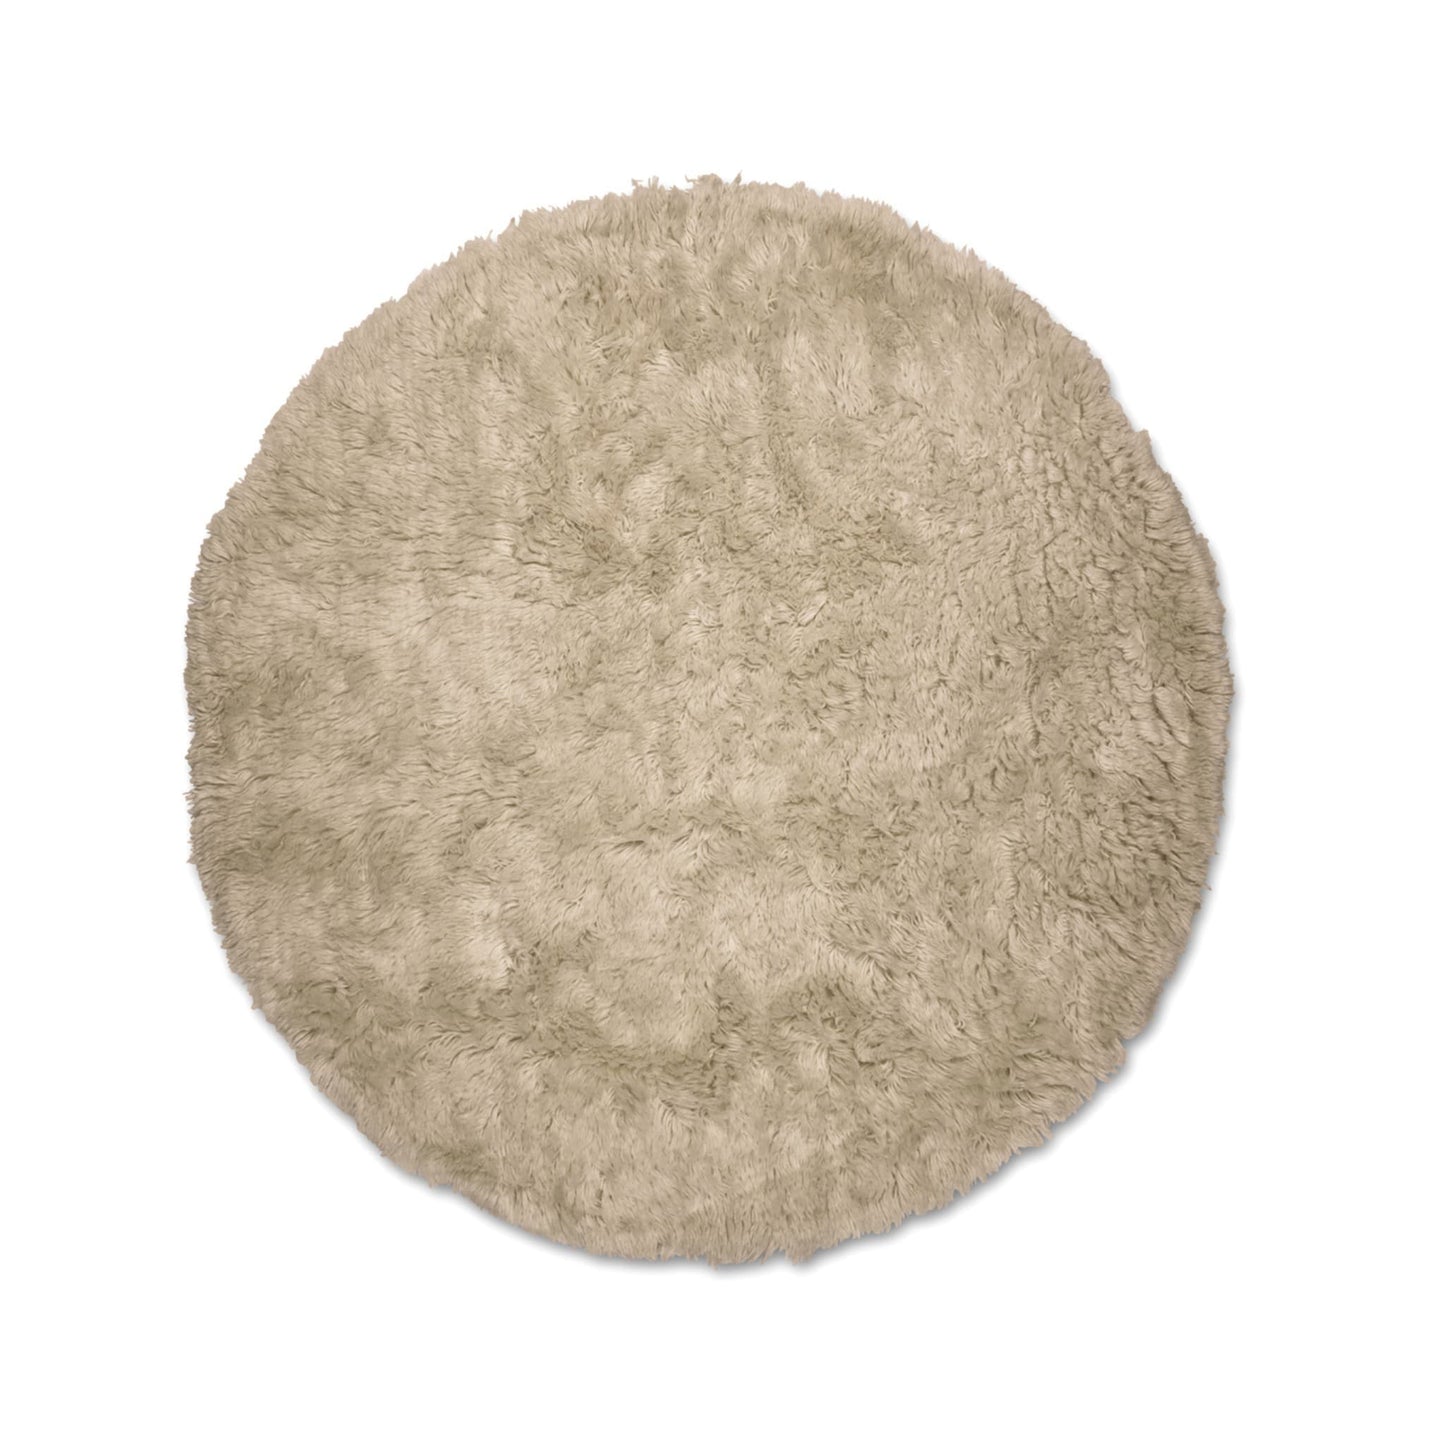 Cloudy rug round beige